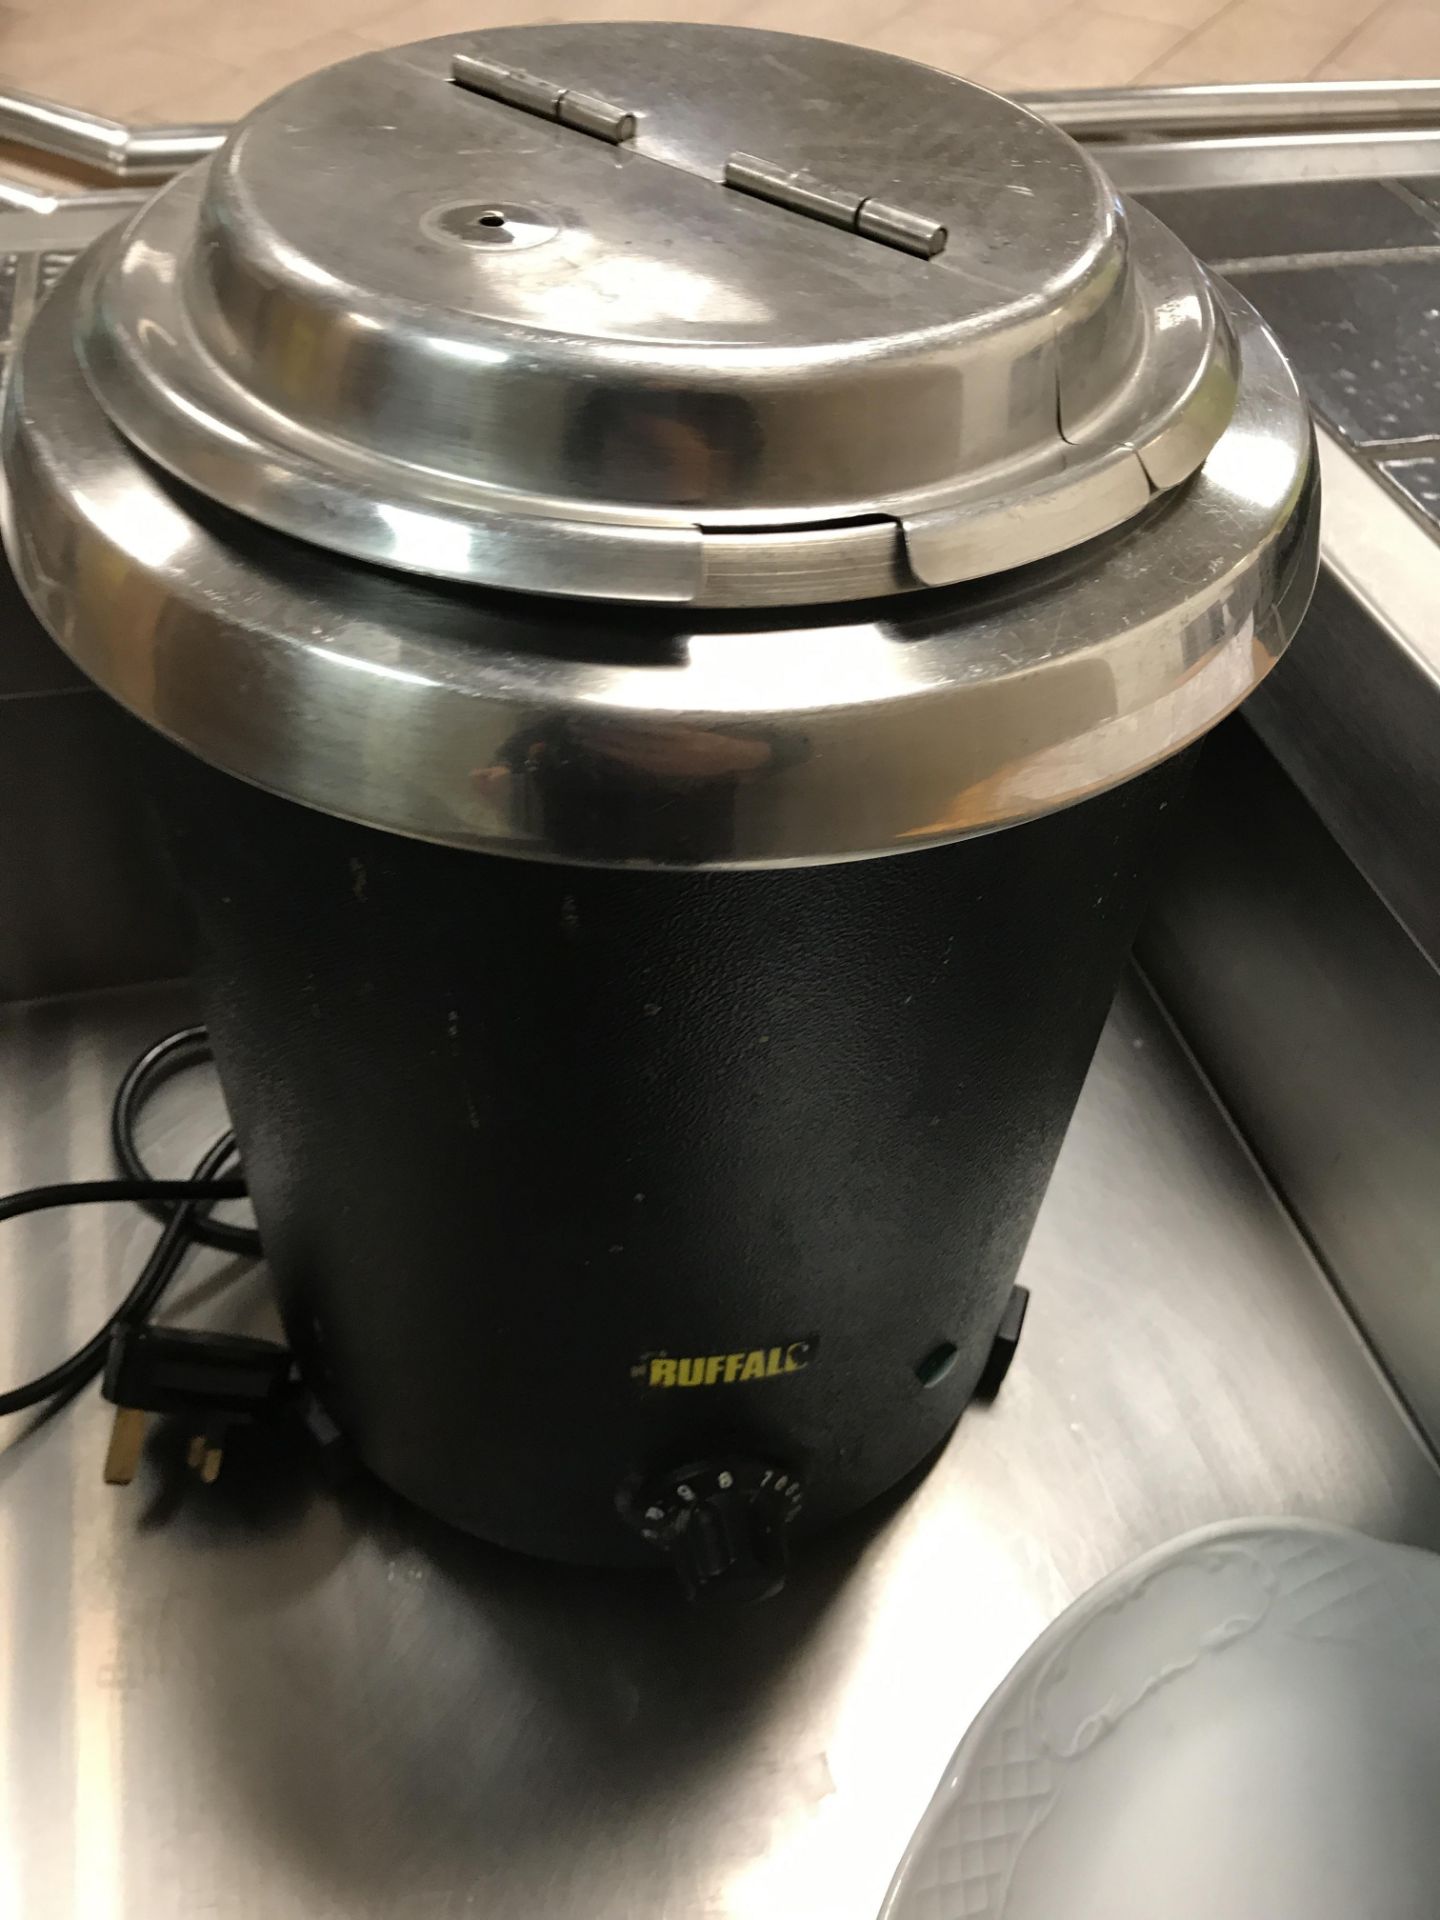 Buffalo soup kettle - Image 2 of 3